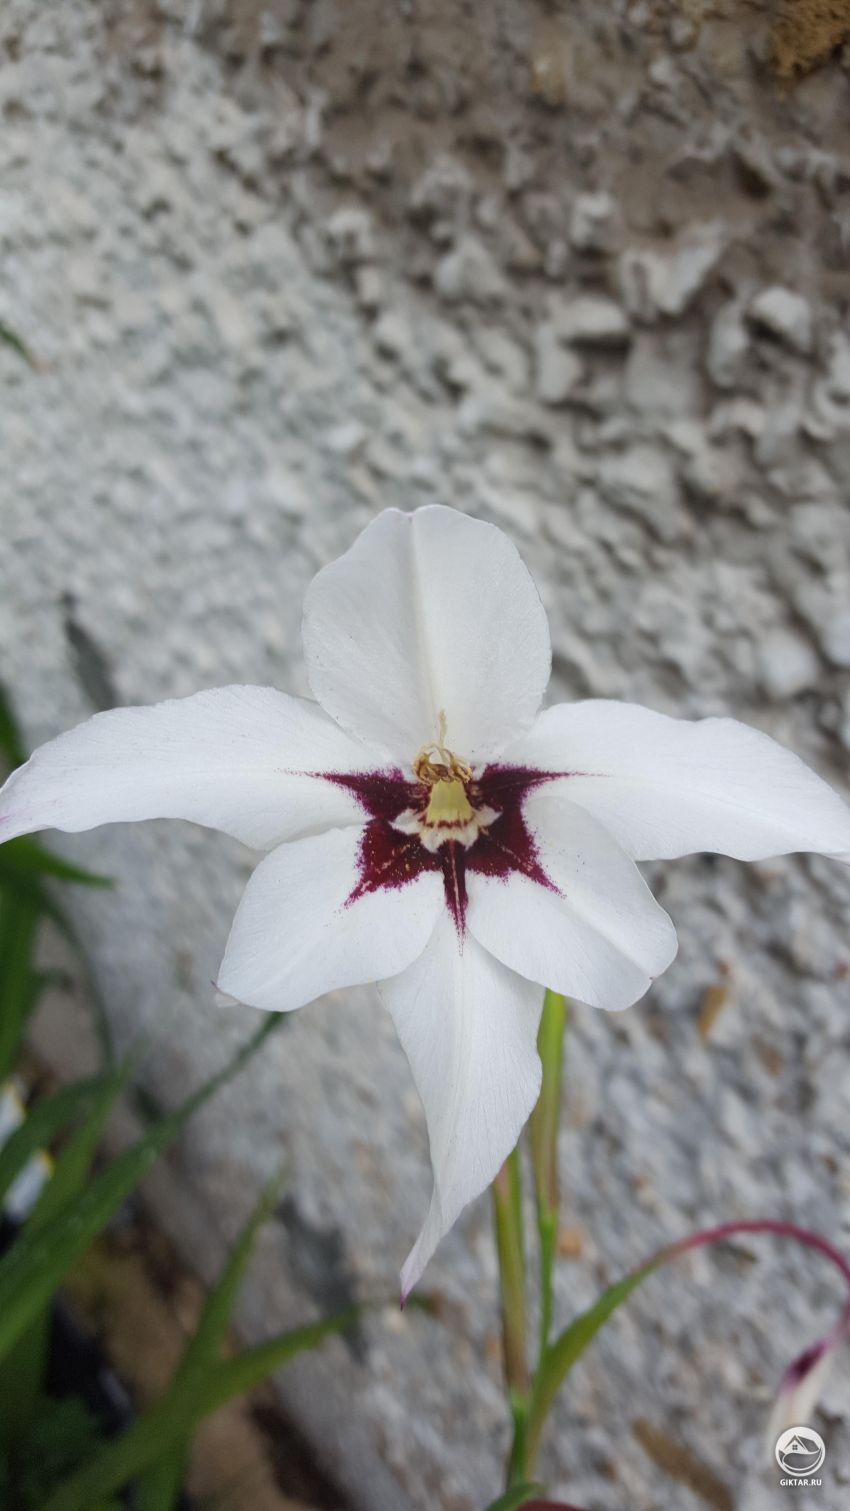 Нужна помощь в идентификации этого цветка.